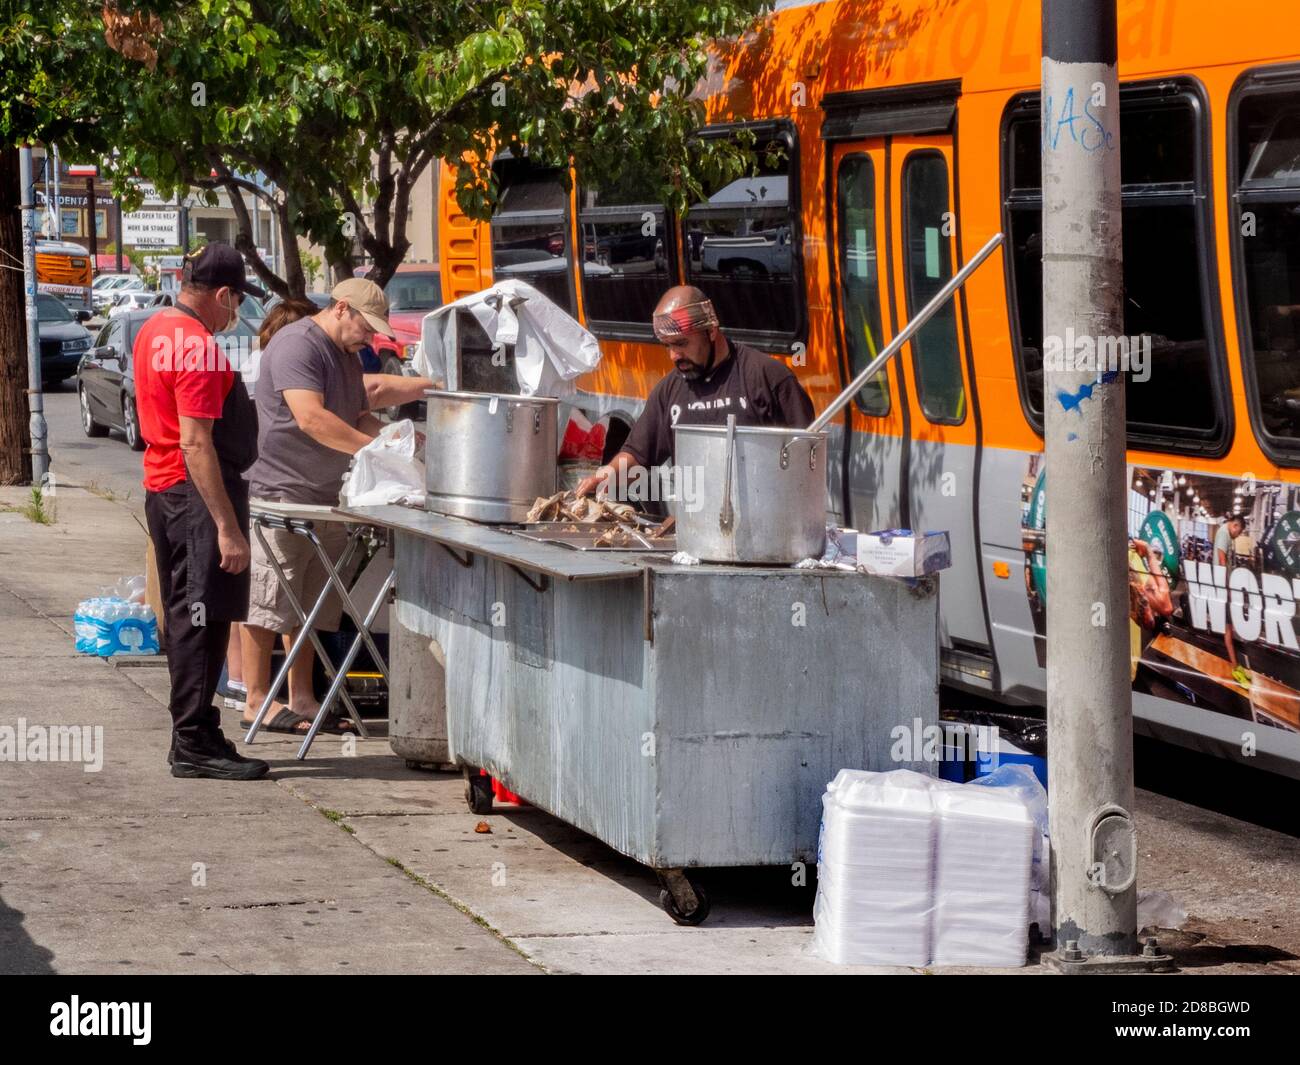 Mit Restaurants geschlossen in der Coronavirus Pandemie, ein unternehmungslustiger hispanischer Koch bewegt seinen Grill und Töpfe im Freien auf den Bürgersteig an einer Bushaltestelle in Stockfoto